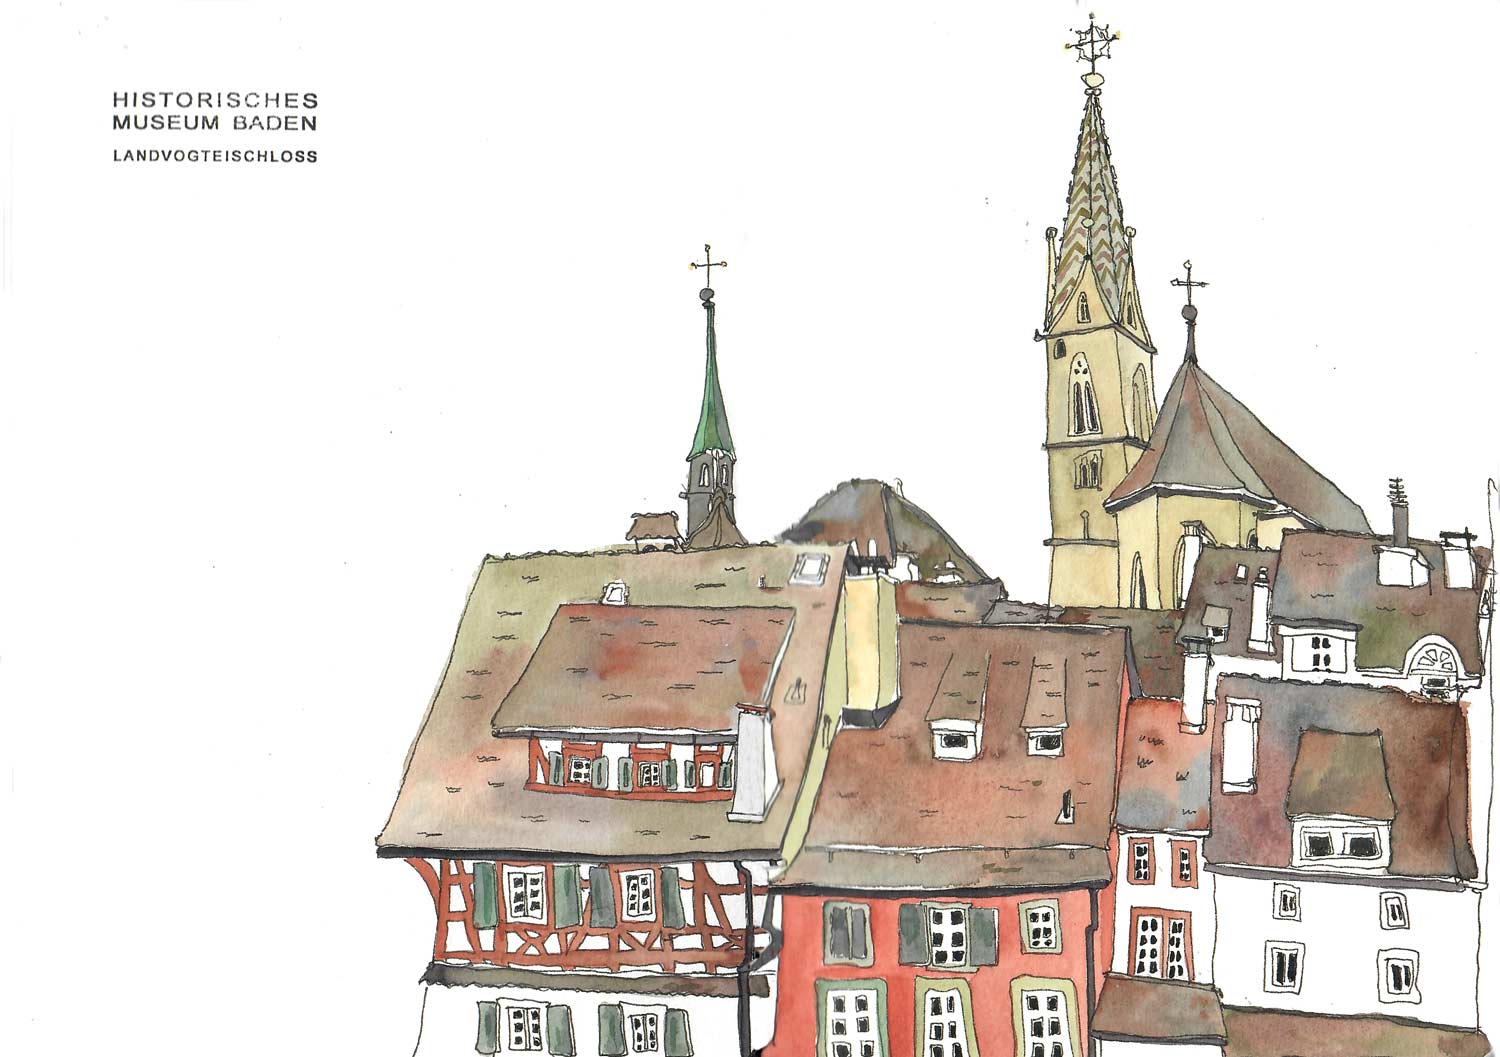 Urbansketching, usaargau, Aargauer Urbansketchers, sketchcrawl, historisches Museum Baden